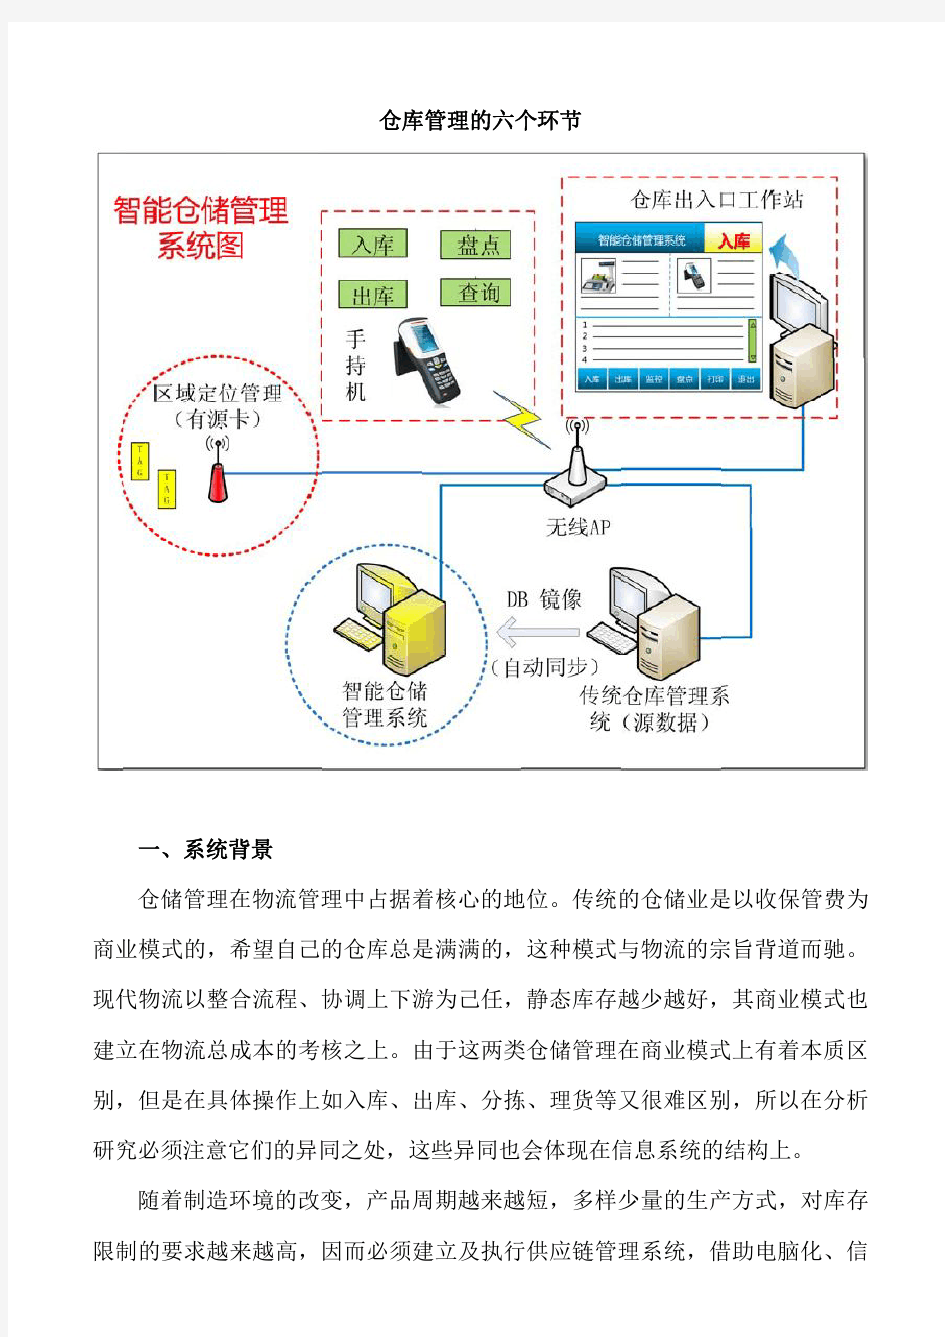 建立RFID智能仓储系统 合理化建议--任燕飞 2013.10.28